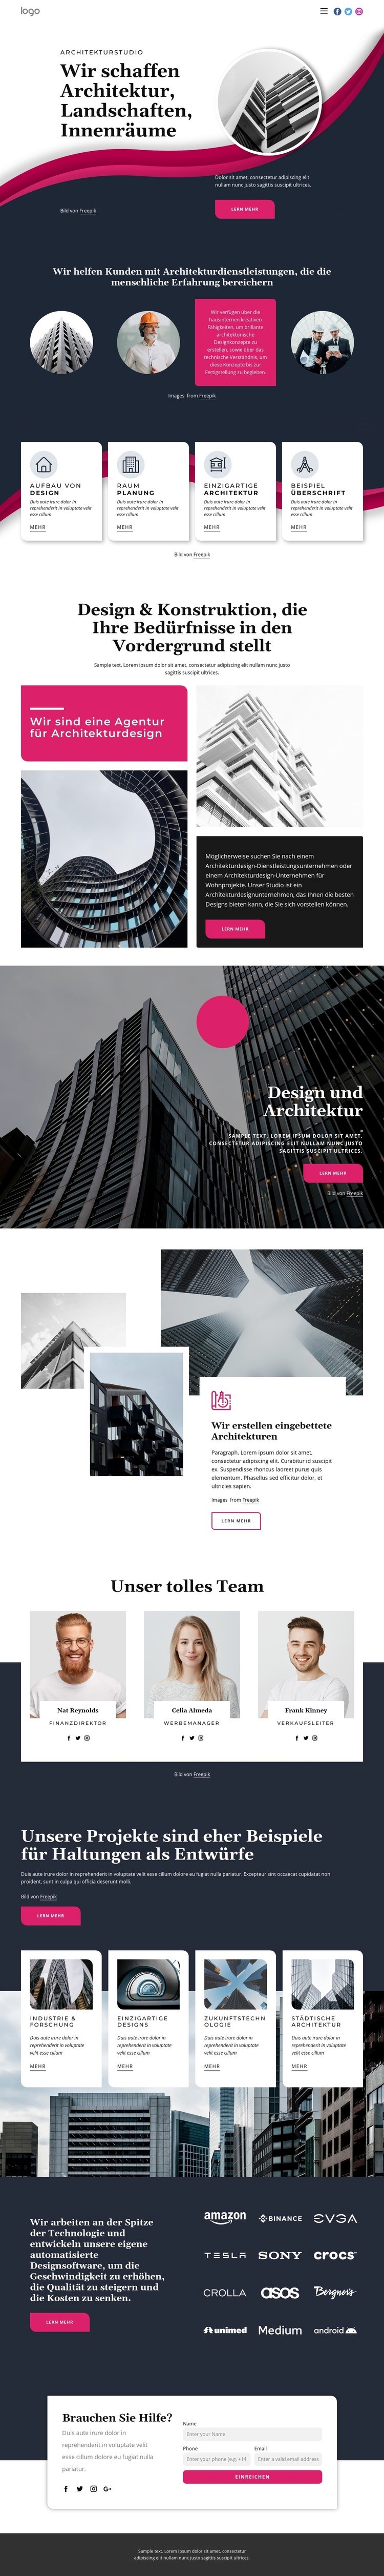 Wir schaffen großartige Architektur Landing Page